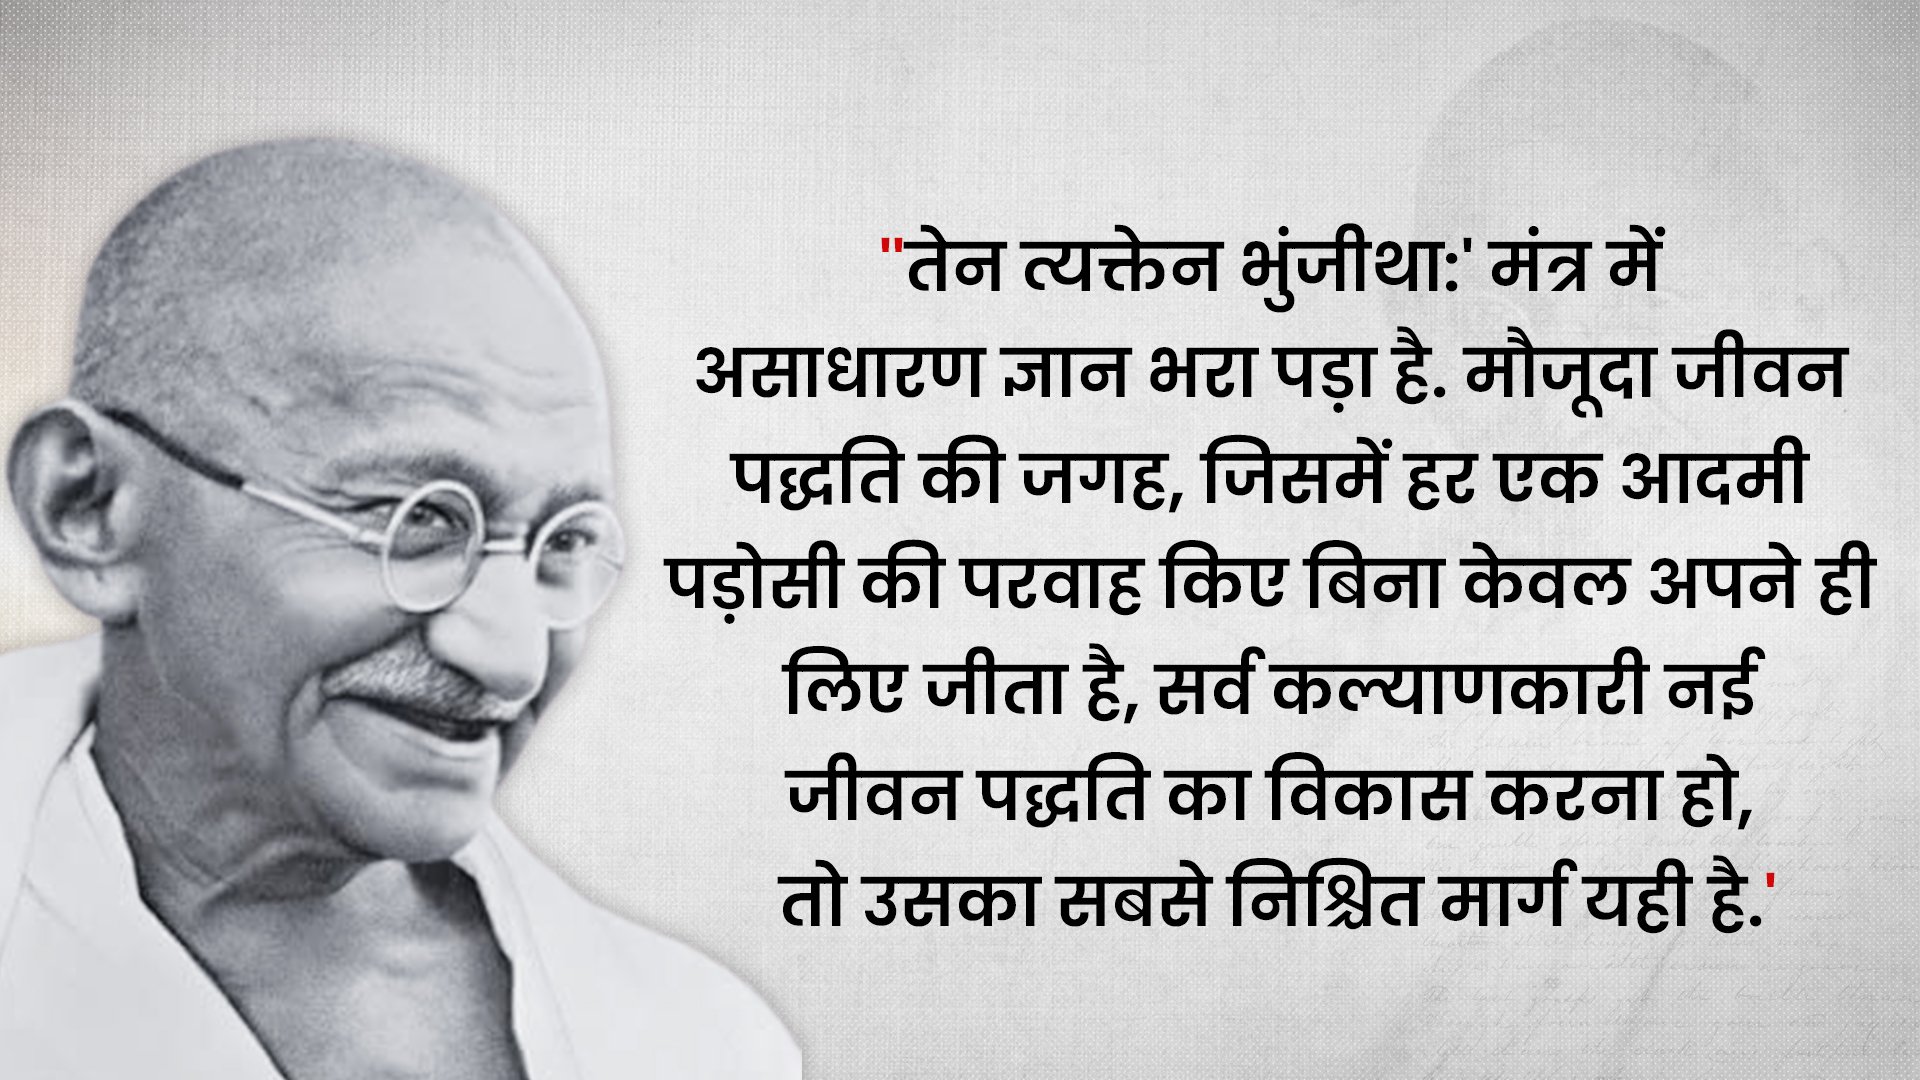 महात्मा गांधी का संदेश